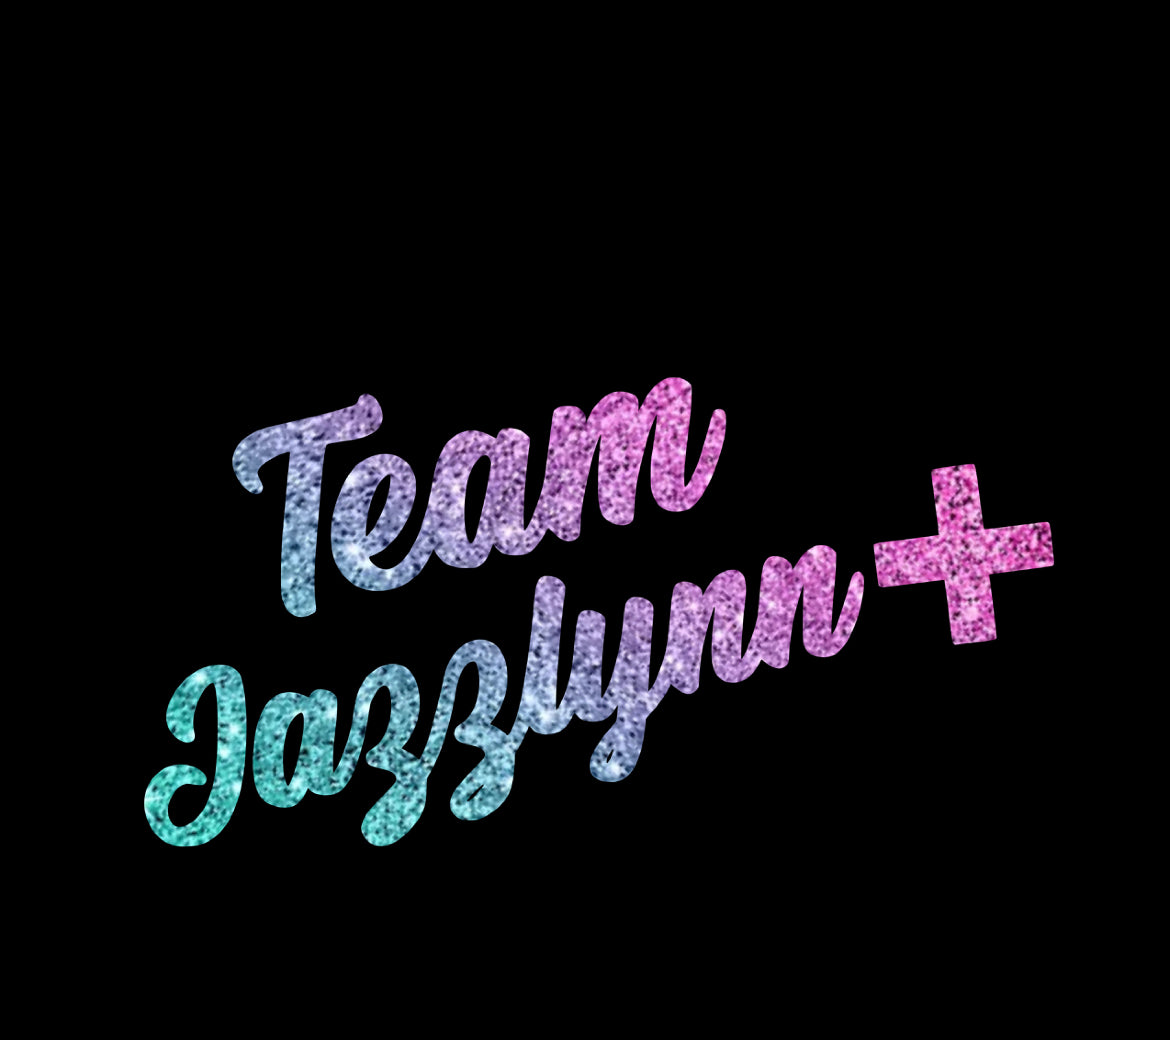 Team Jazzlynn